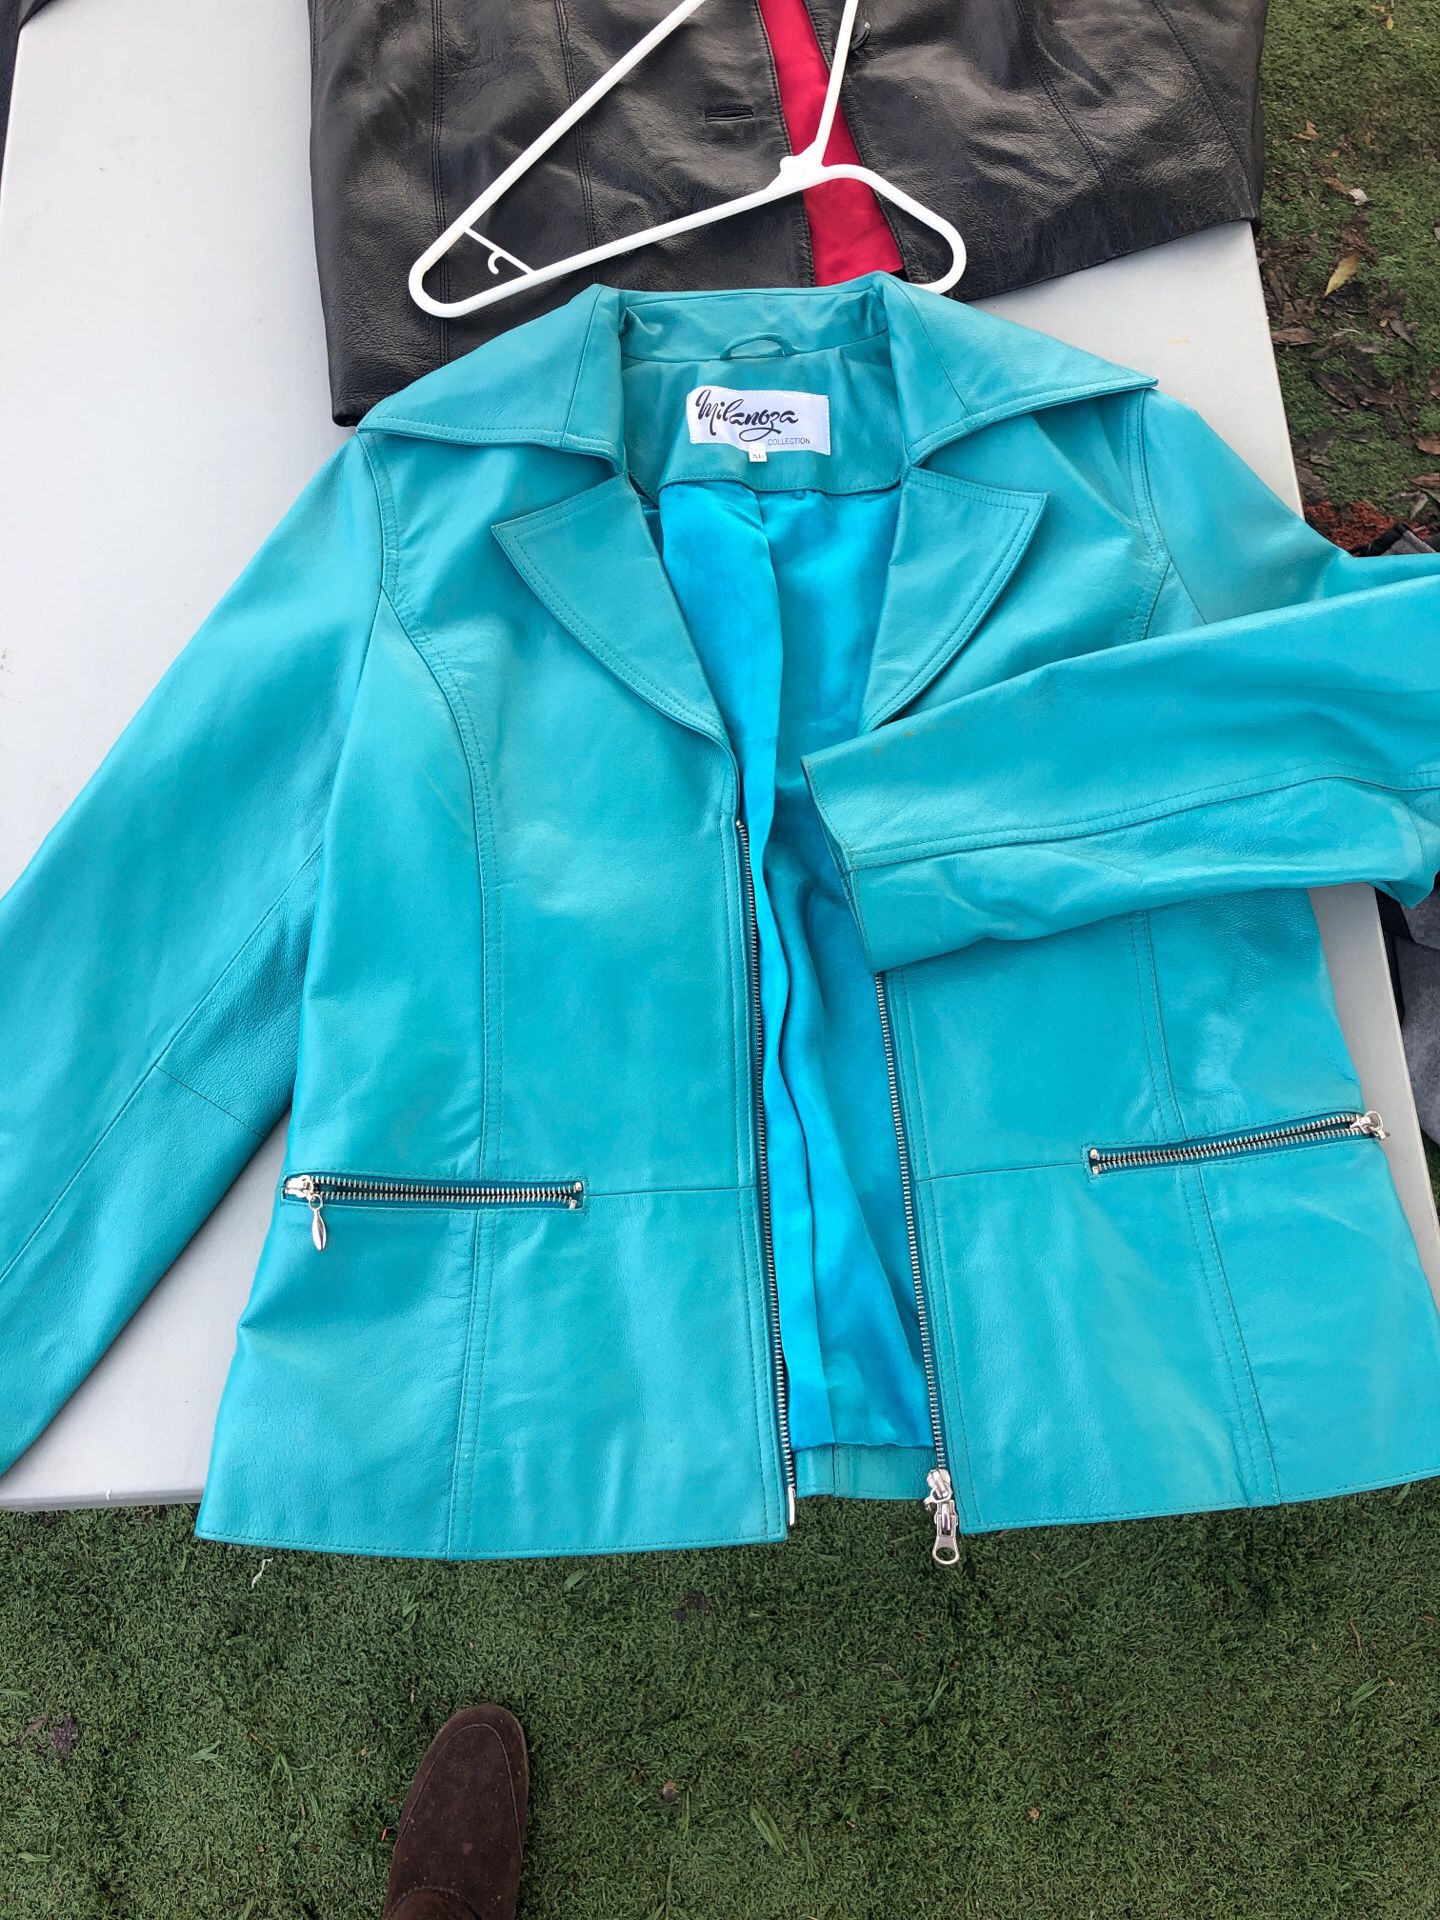 Leather Turquoise lx large women’s beautiful blazer jacket